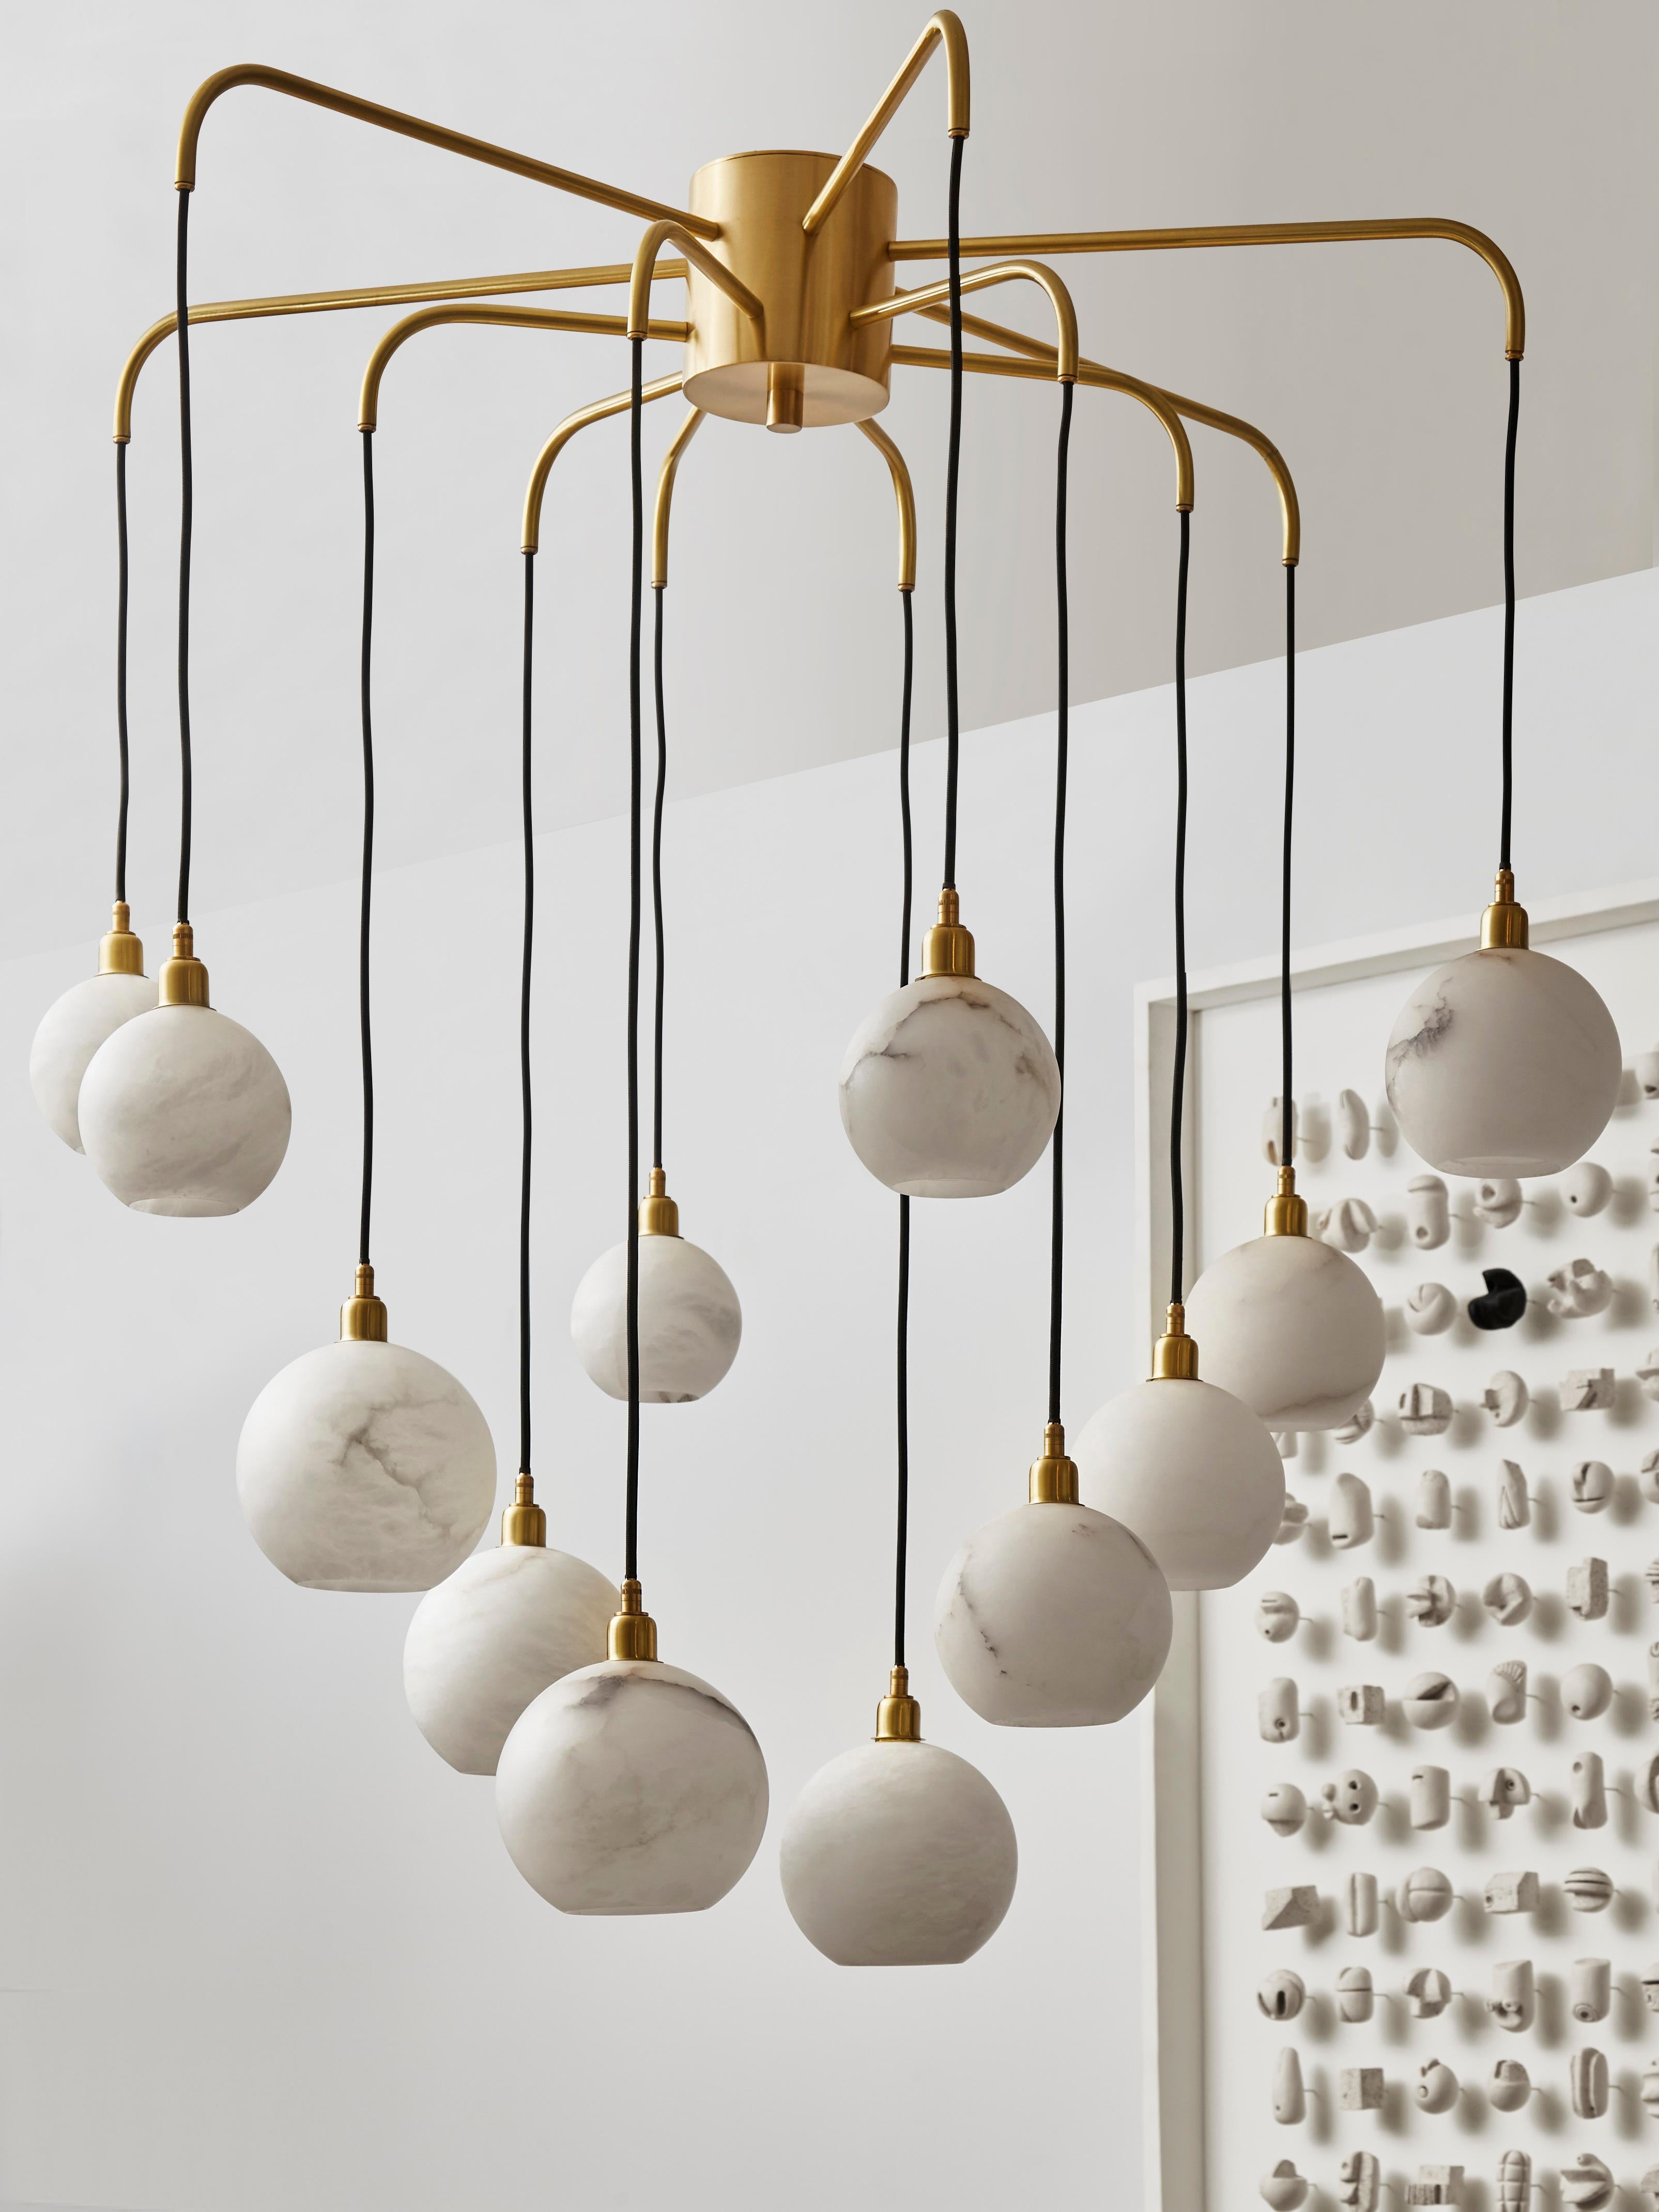 Unique brushed brass chandelier with alabaster globes.
Creation Studio Glustin.
France, 2023